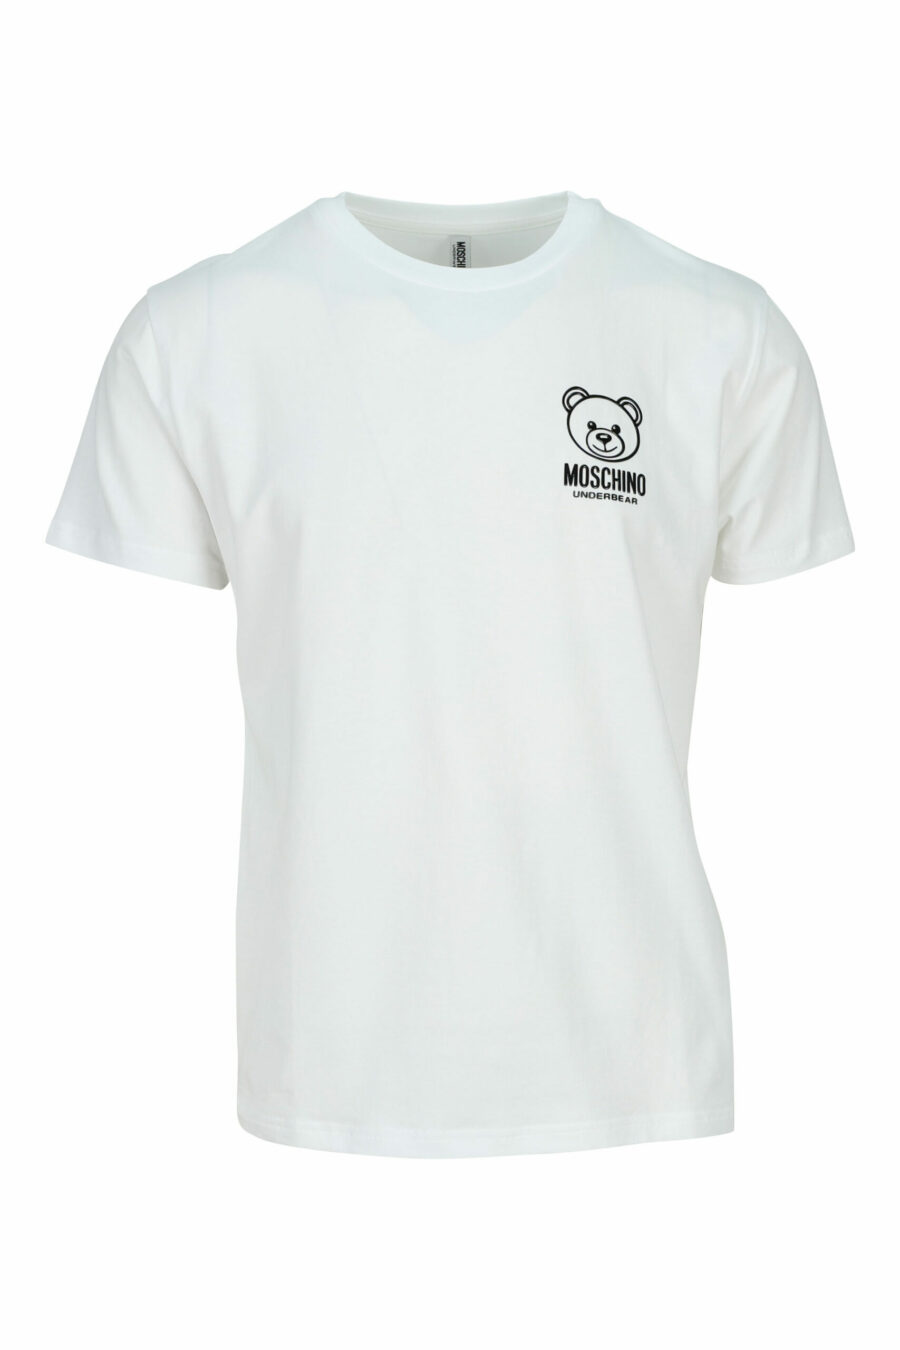 T-shirt blanc avec mini-logo ours "underbear" en caoutchouc noir - 667113602585 scaled